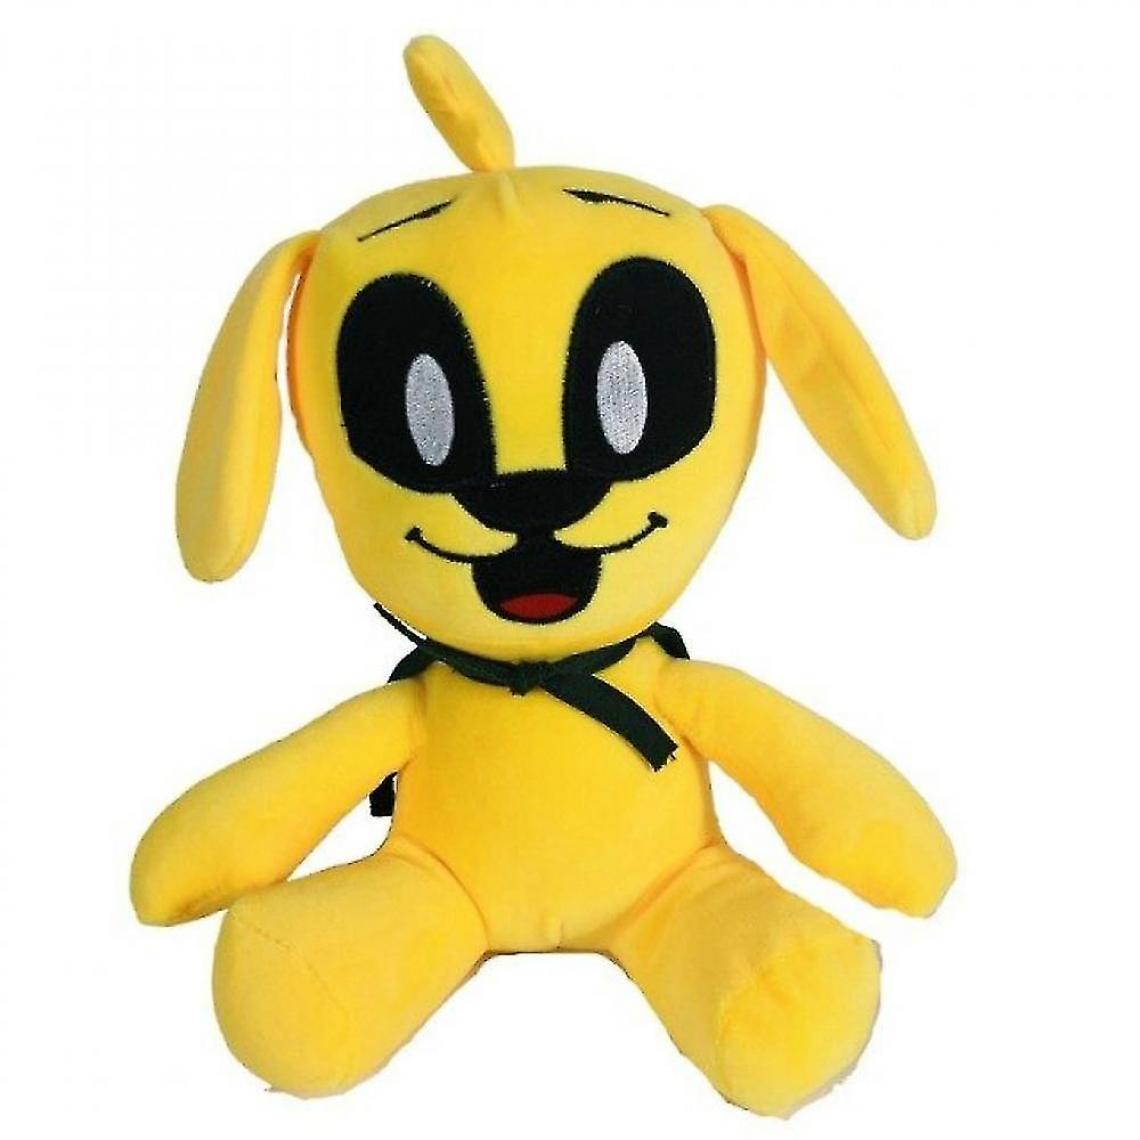 Universal - Animaux en peluche 25 cm peluche jouet mike - jouet chien jaune poupée en peluche douce anime animal chien pélican cadeau d'anniversaire(Jaune) - Doudous